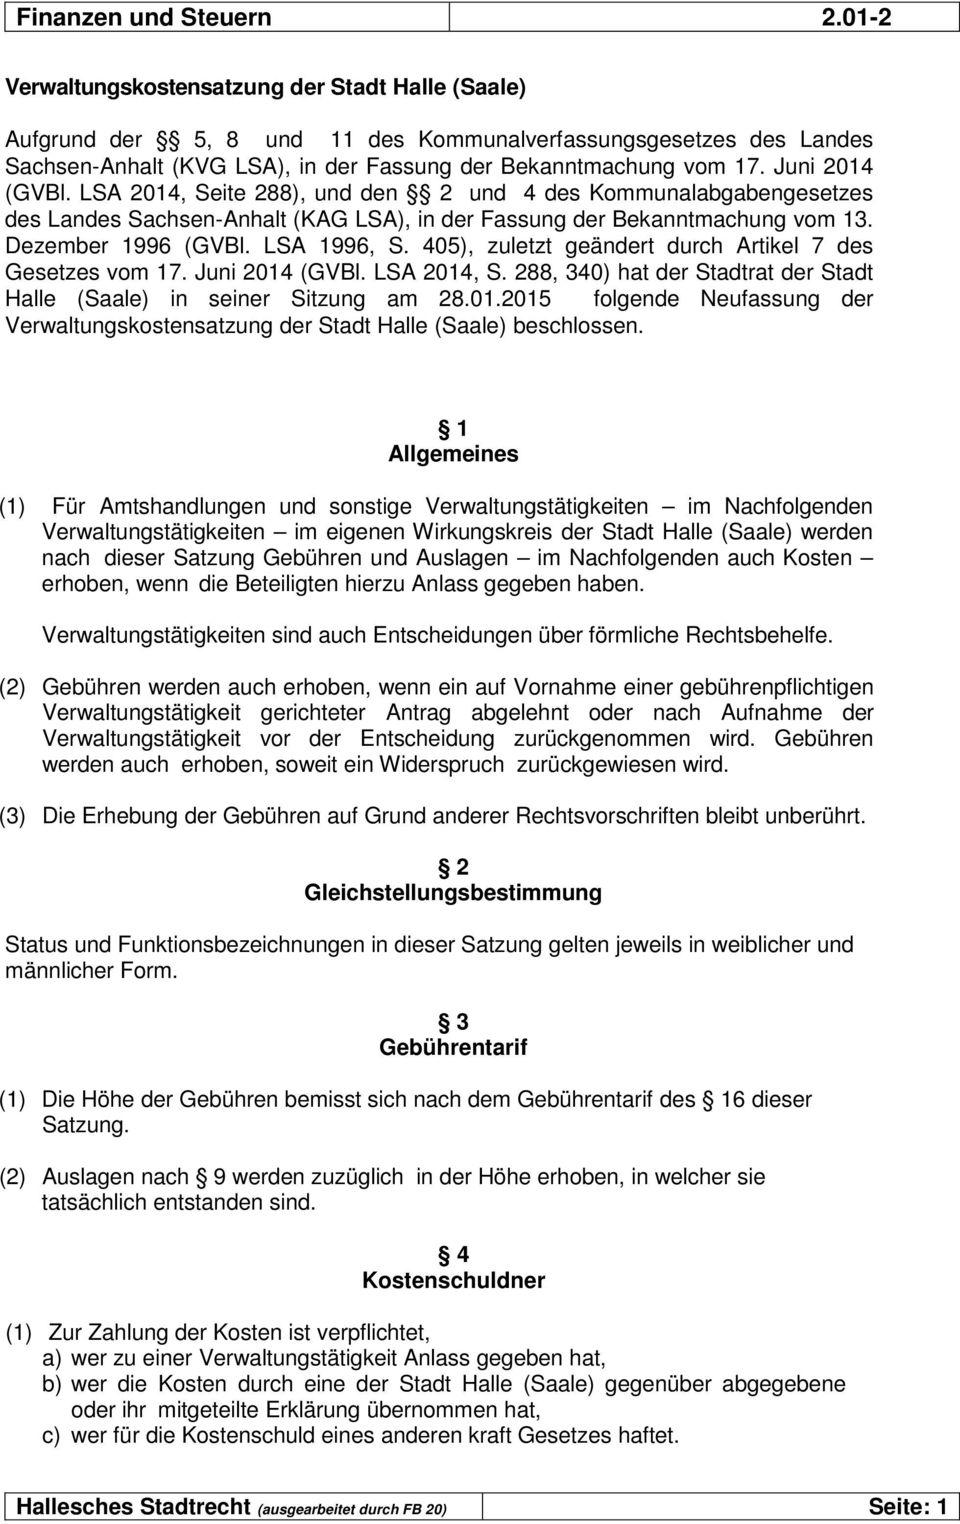 405), zuletzt geändert durch Artikel 7 des Gesetzes vom 17. Juni 2014 (GVBl. LSA 2014, S. 288, 340) hat der Stadtrat der Stadt Halle (Saale) in seiner Sitzung am 28.01.2015 folgende Neufassung der Verwaltungskostensatzung der Stadt Halle (Saale) beschlossen.